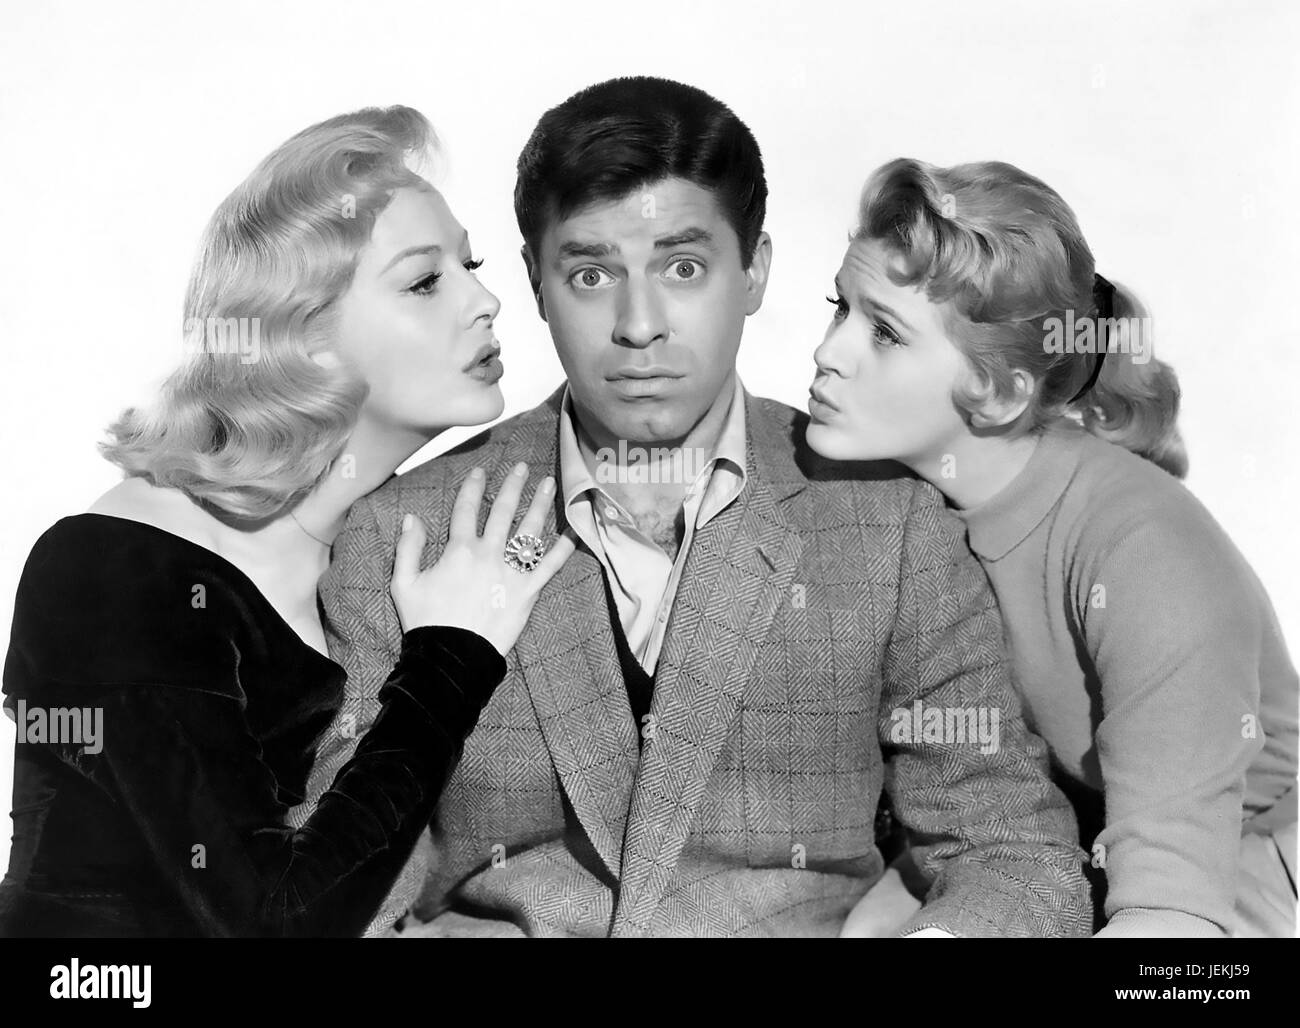 ROCK-A-BYE BABY 1958 Paramount Pictures film avec de gauche à droite : Marilyn Maxwell, Jerry Lewis , Connie Stevens Banque D'Images